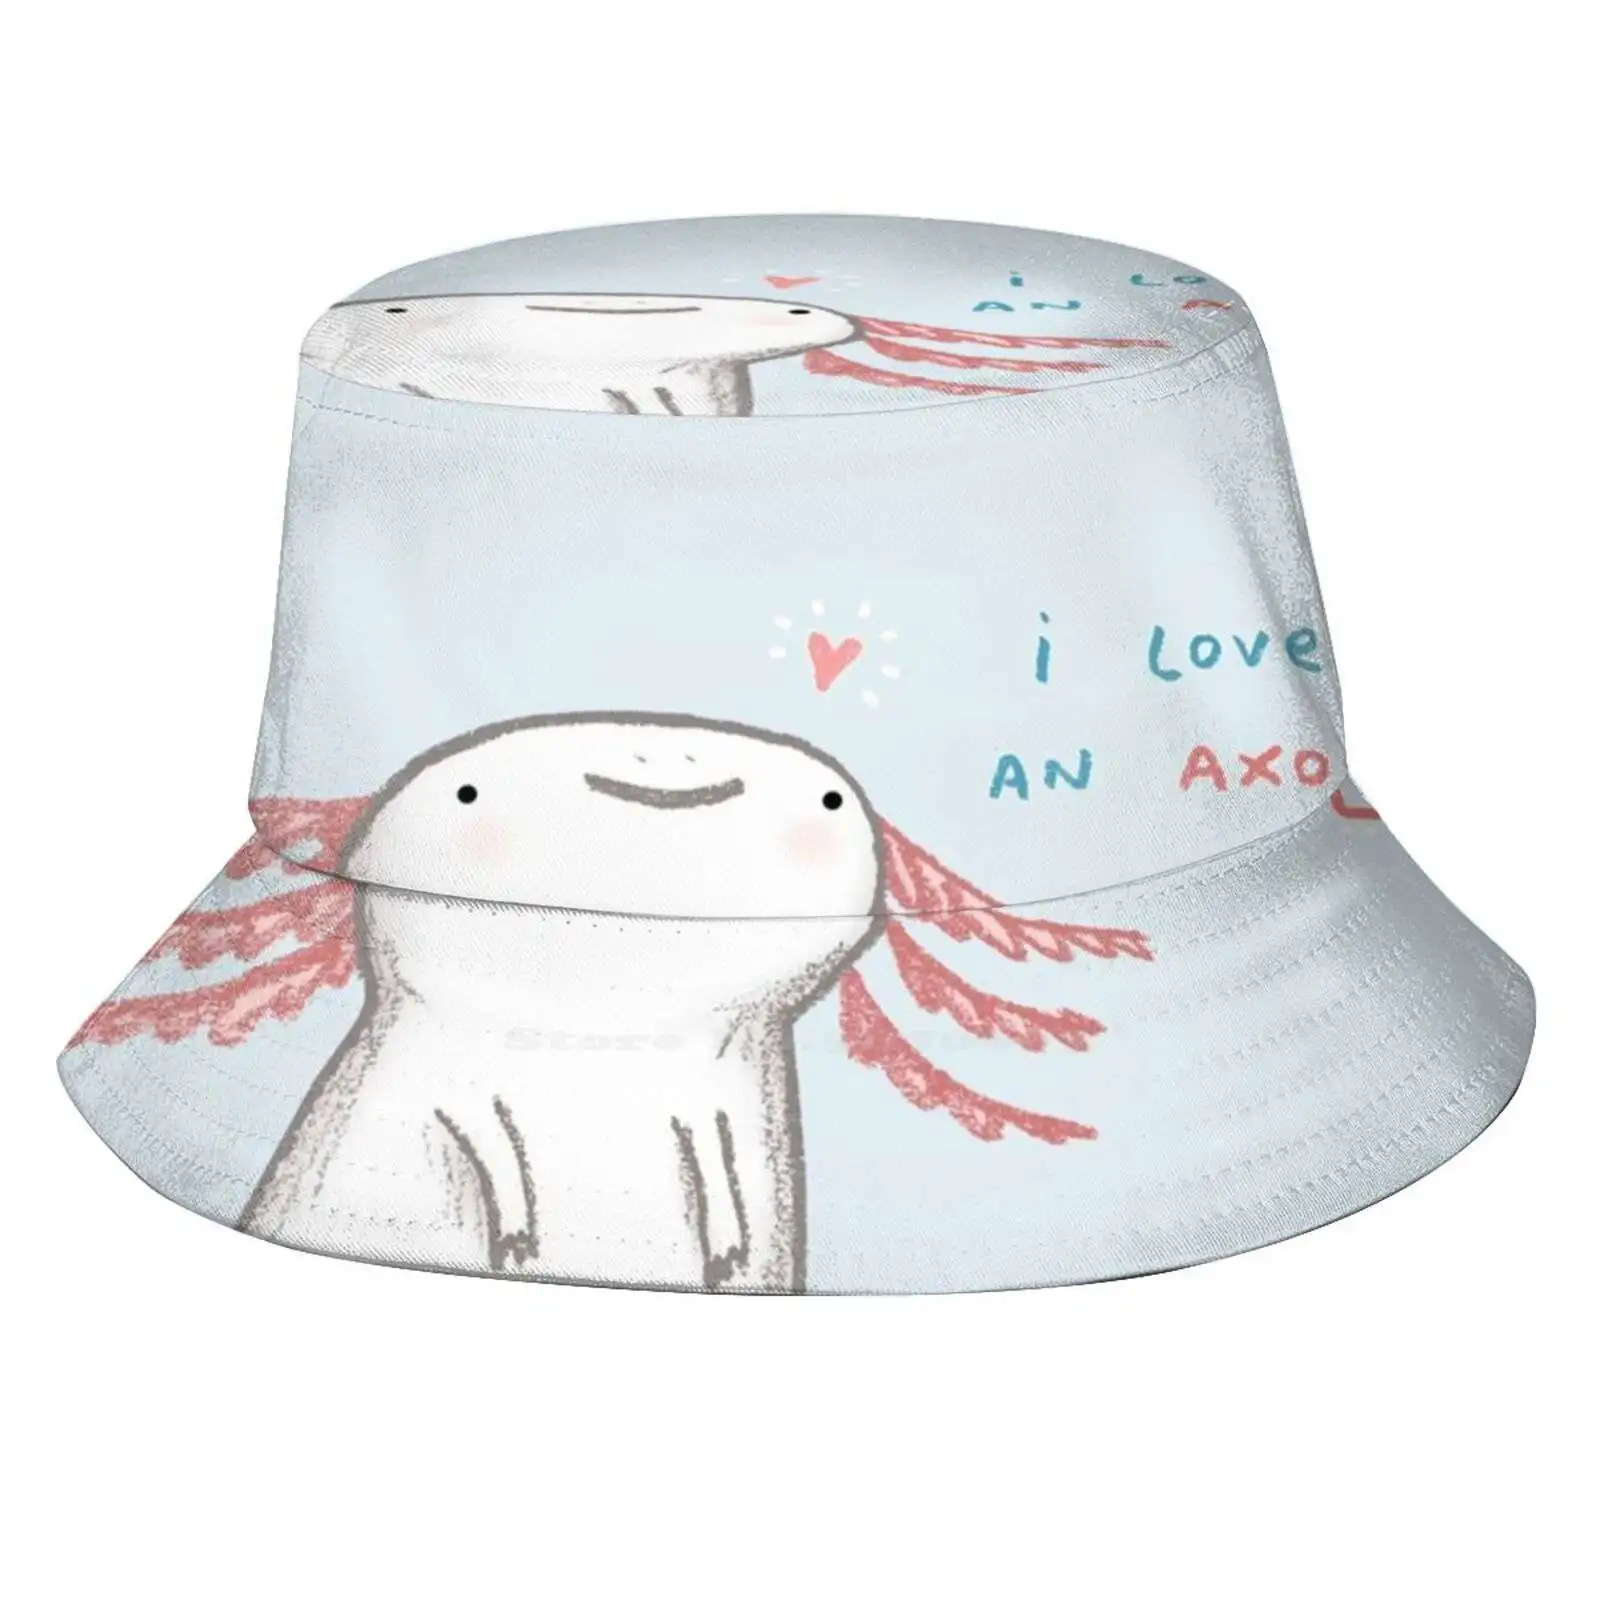 

Панама Lotl с надписью «Love», Пляжная дышащая Солнцезащитная шапка, Axolotl, для влюбленных, на День святого Валентина, для парня, девушки, Gf, мужа, жены